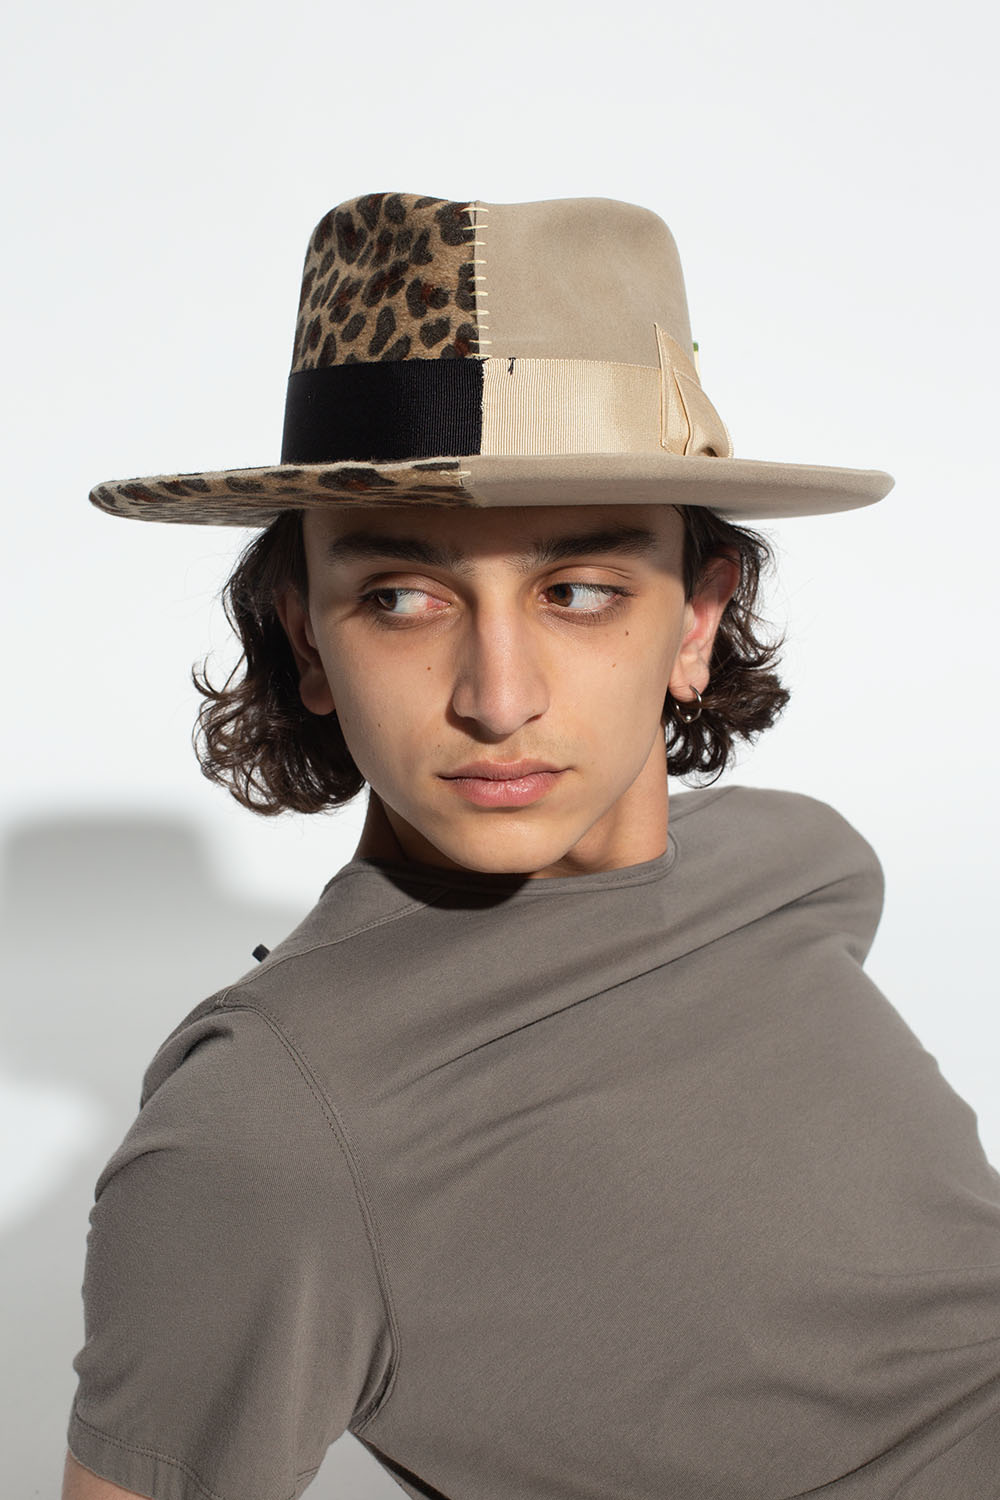 Nick Fouquet ‘Jaguar’ lme-printed hat